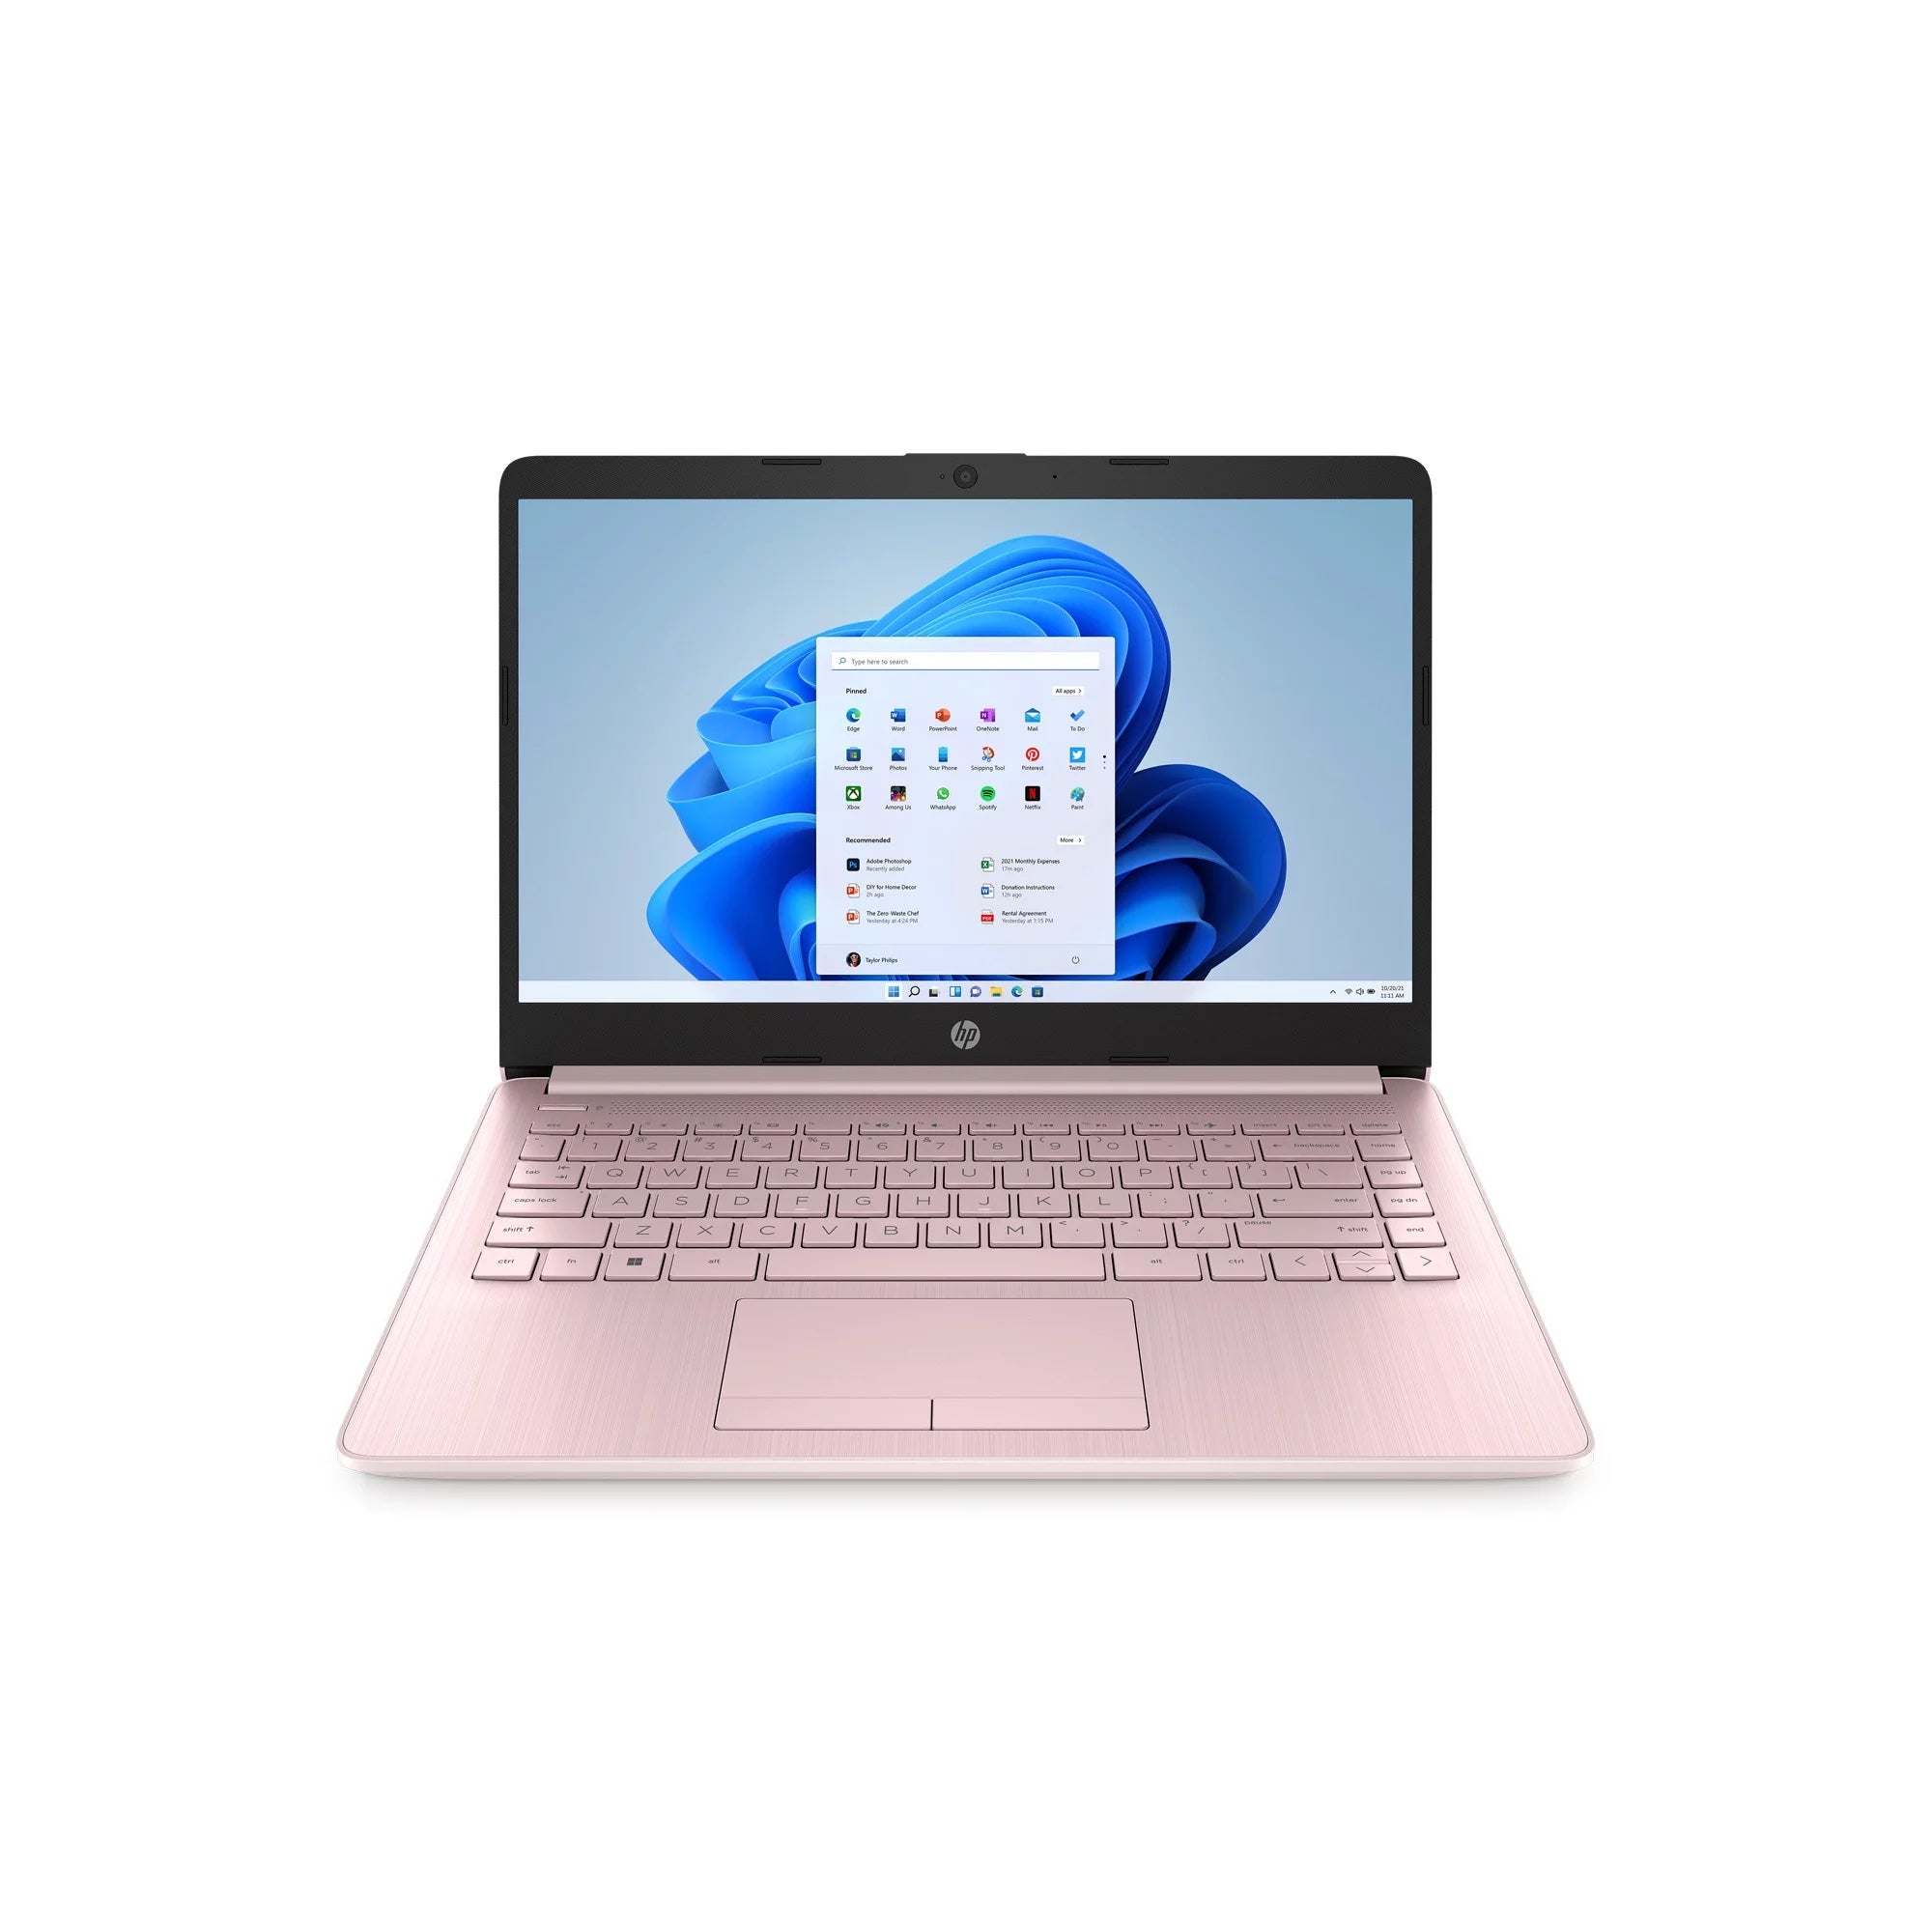 pink laptop